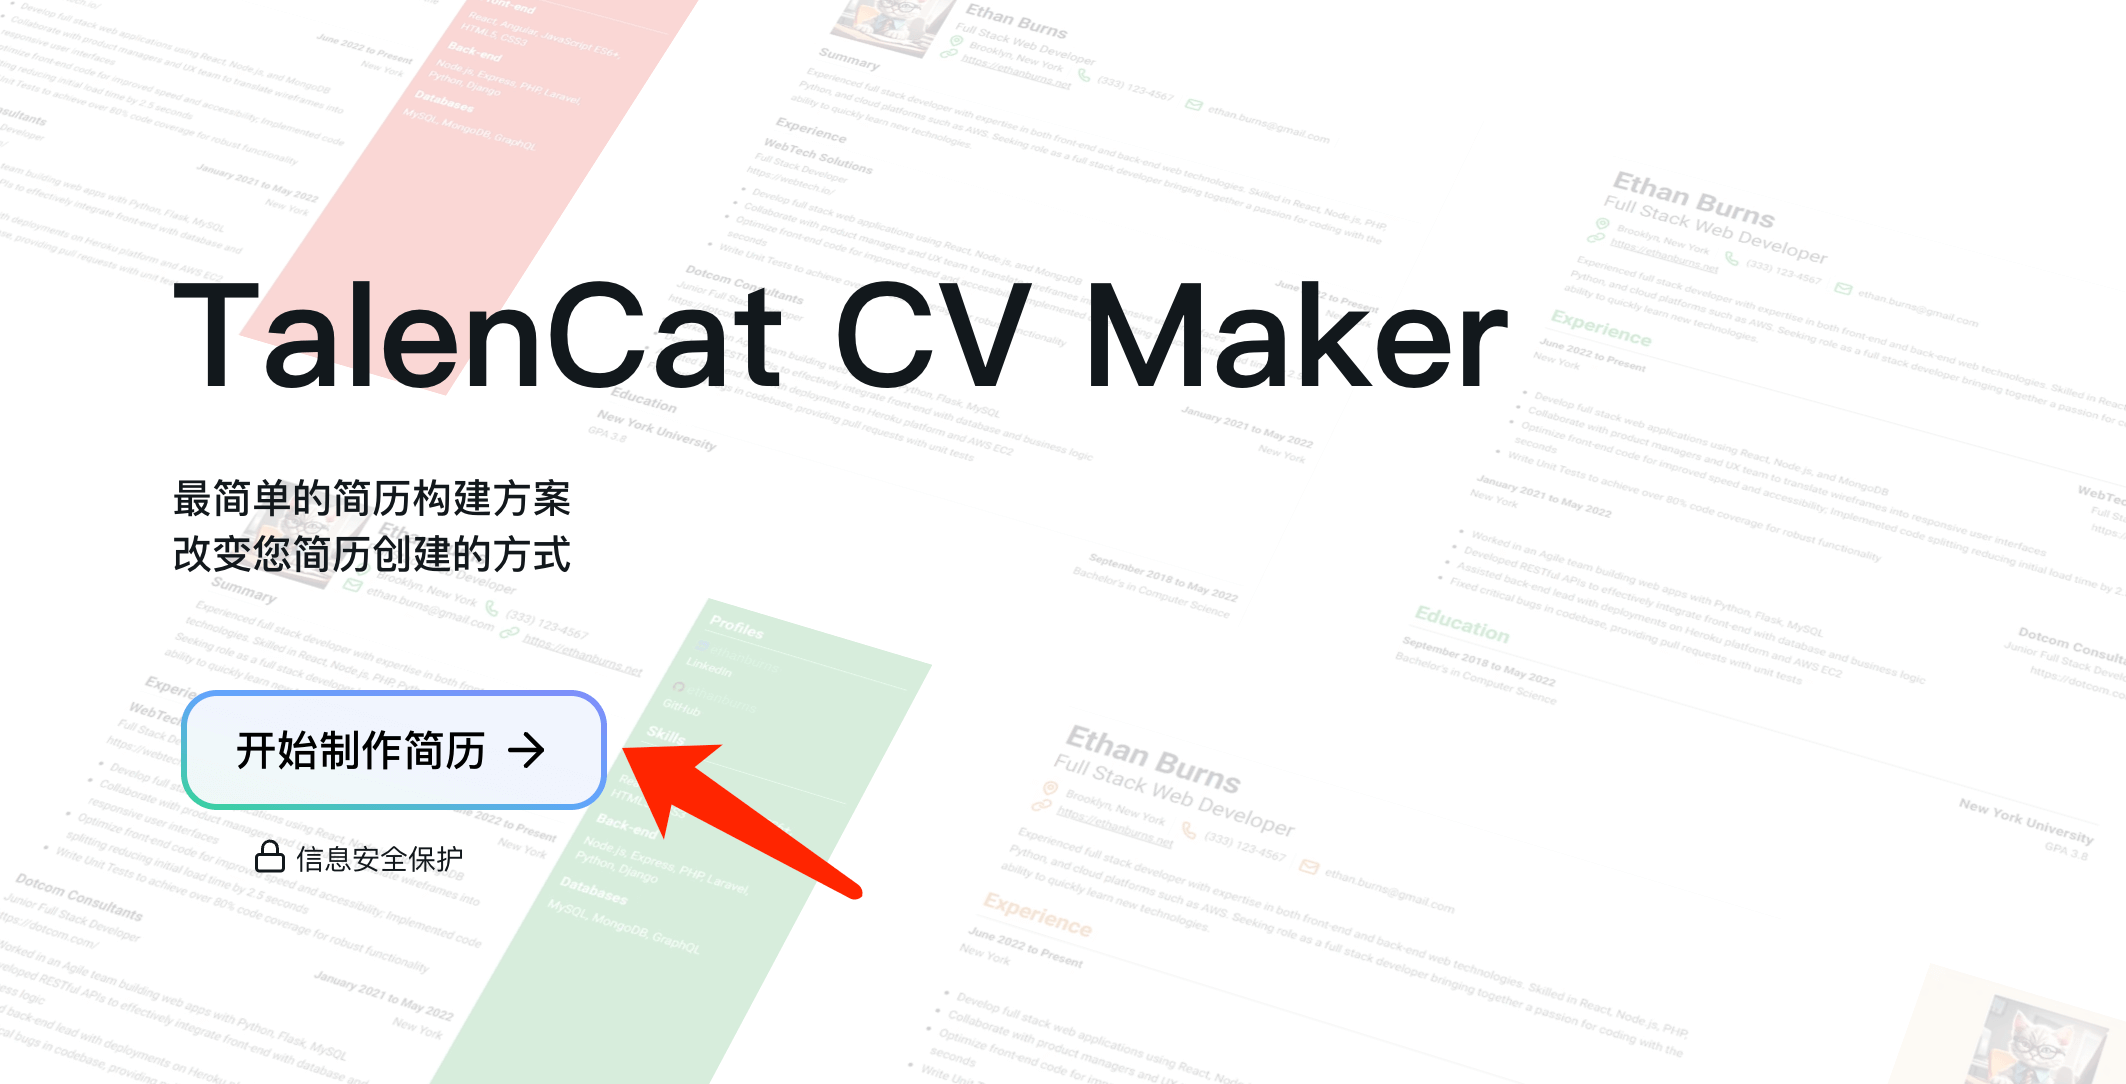 TalenCat CV Maker